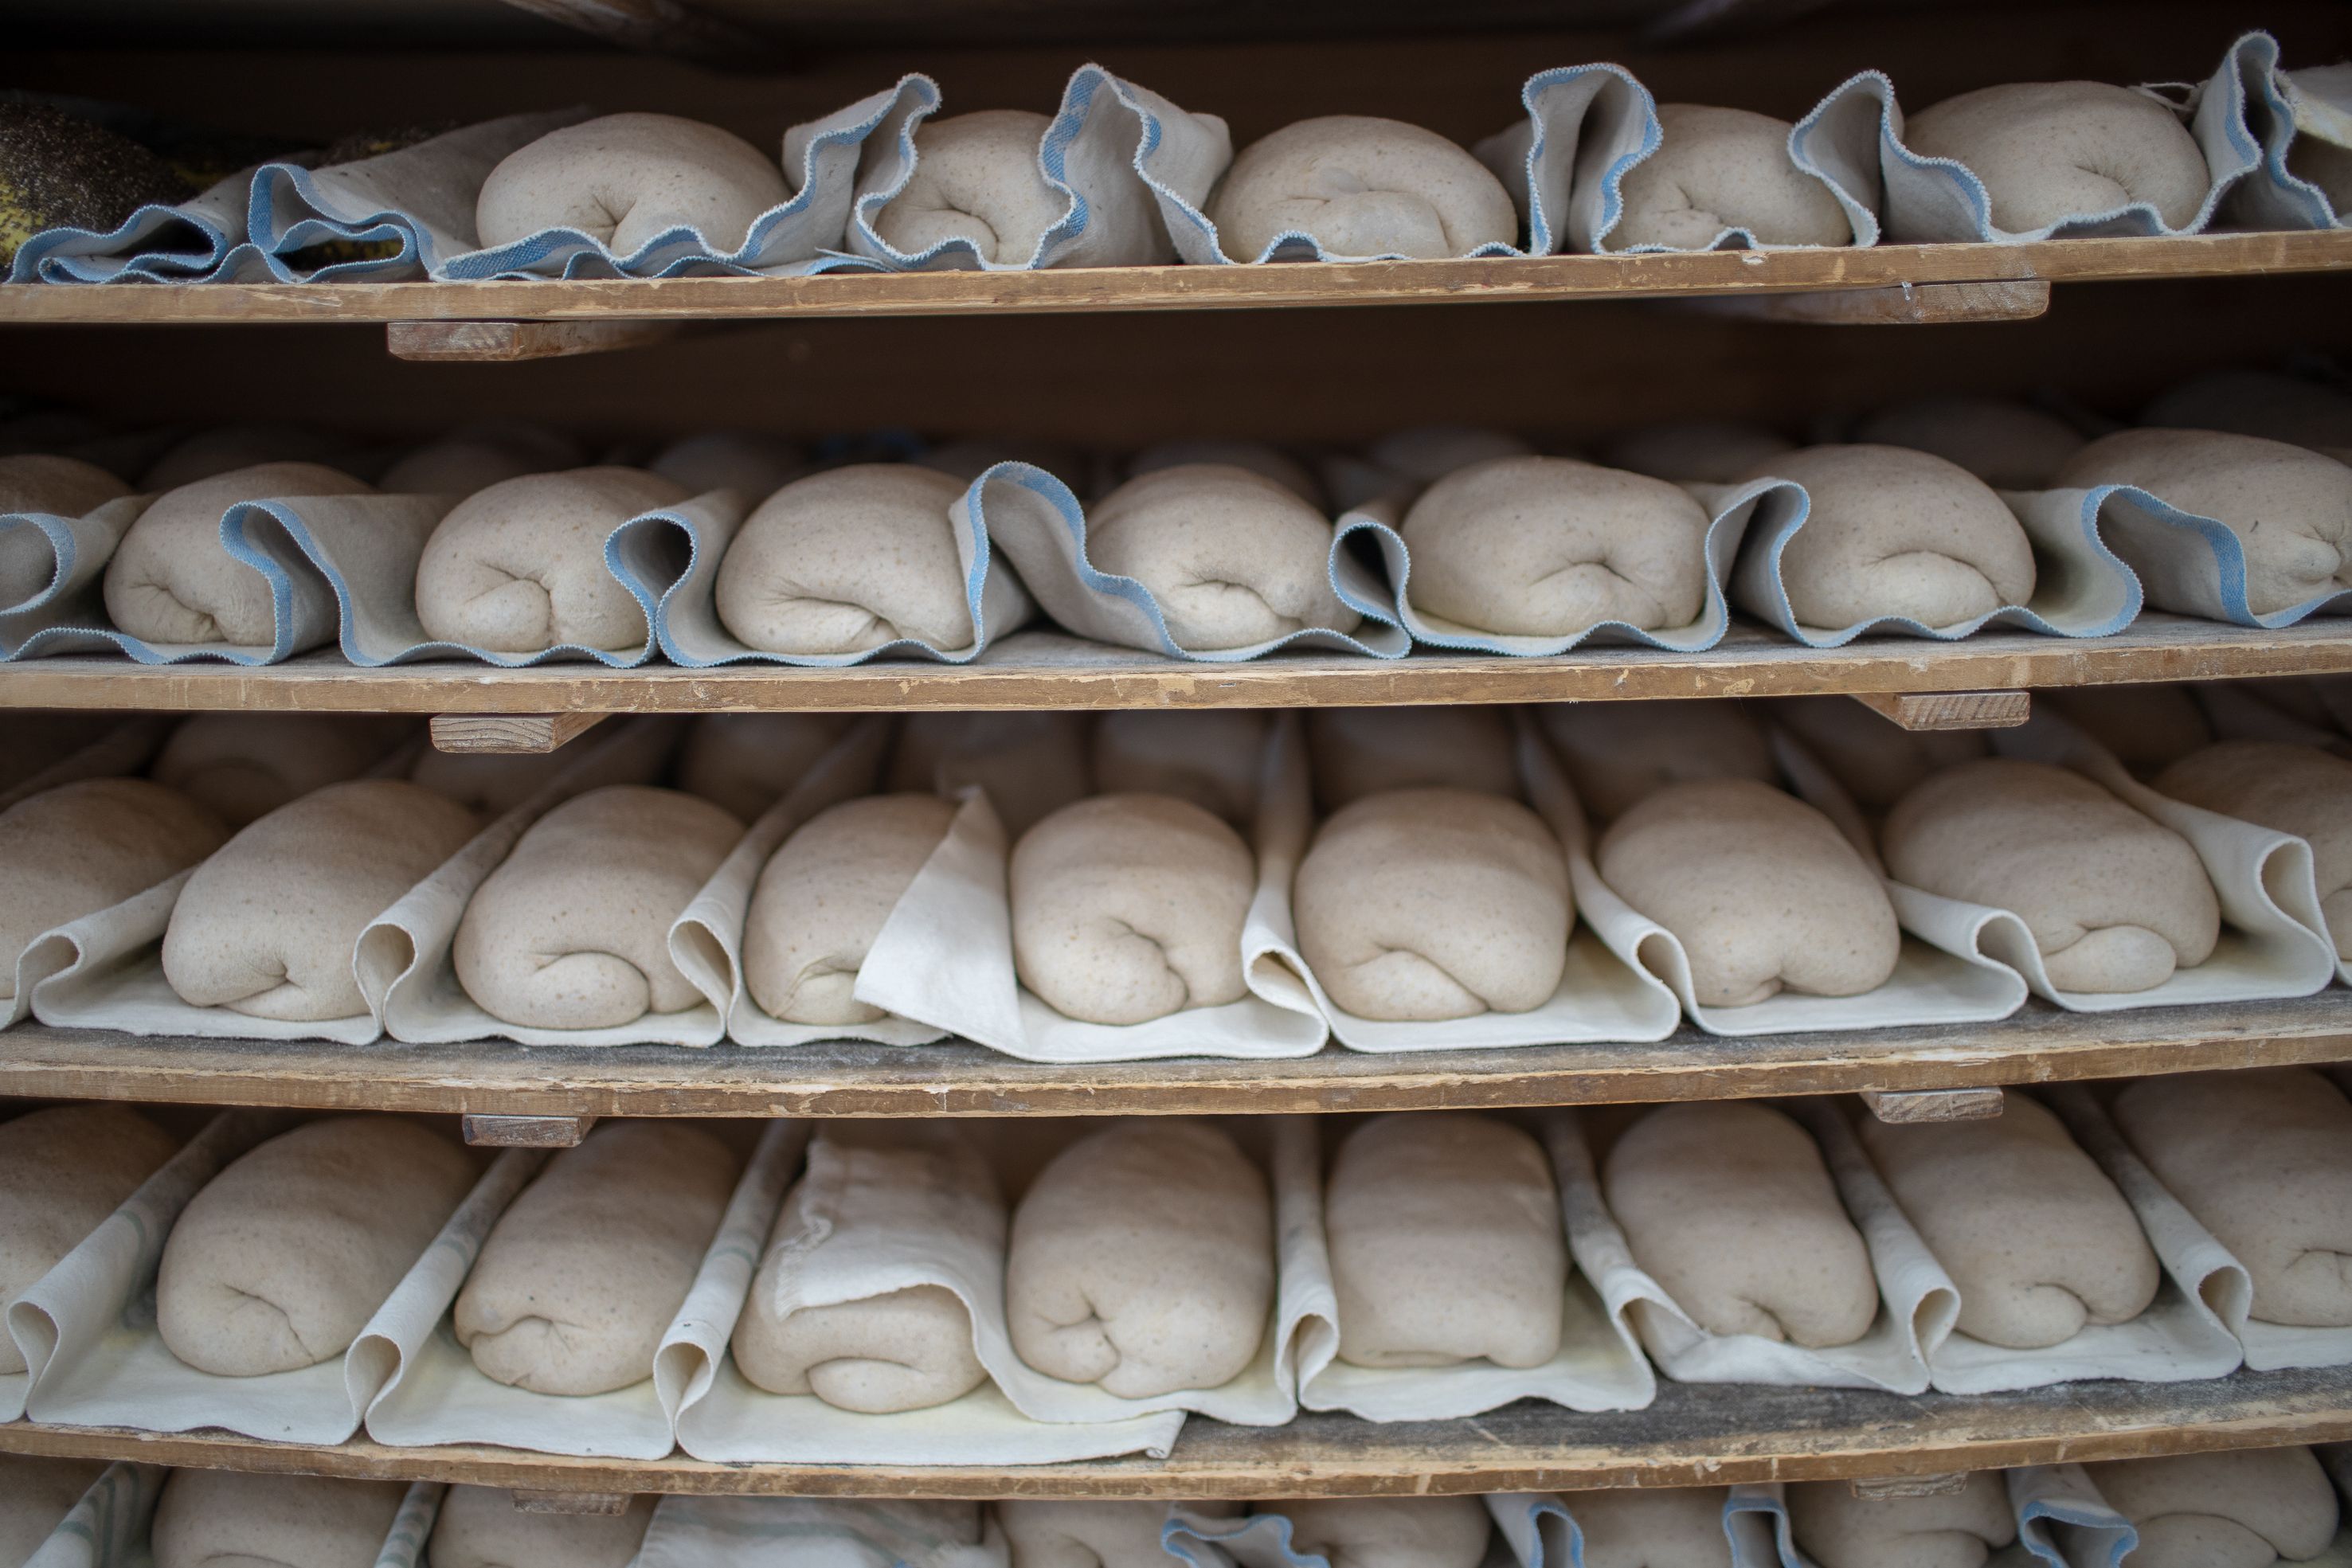 Pan de masa madre de cultivo, en La Cremita, Chiclana. FOTO: JUAN CARLOS TORO.